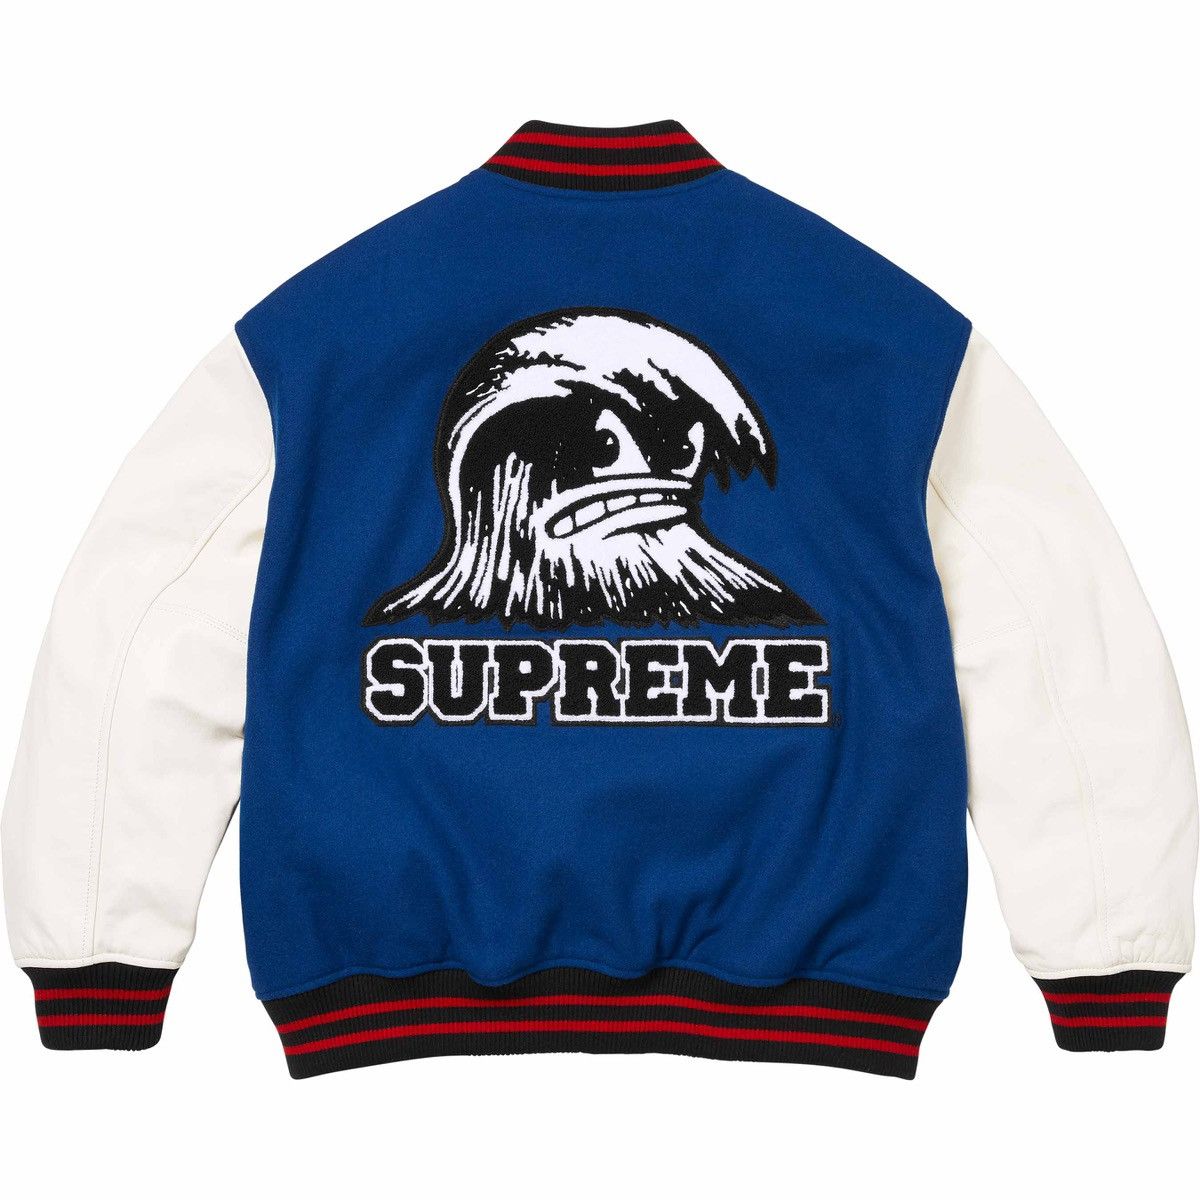 Supreme Supreme Wave Varsity Jacket in Blue Size XL Wool Blend 